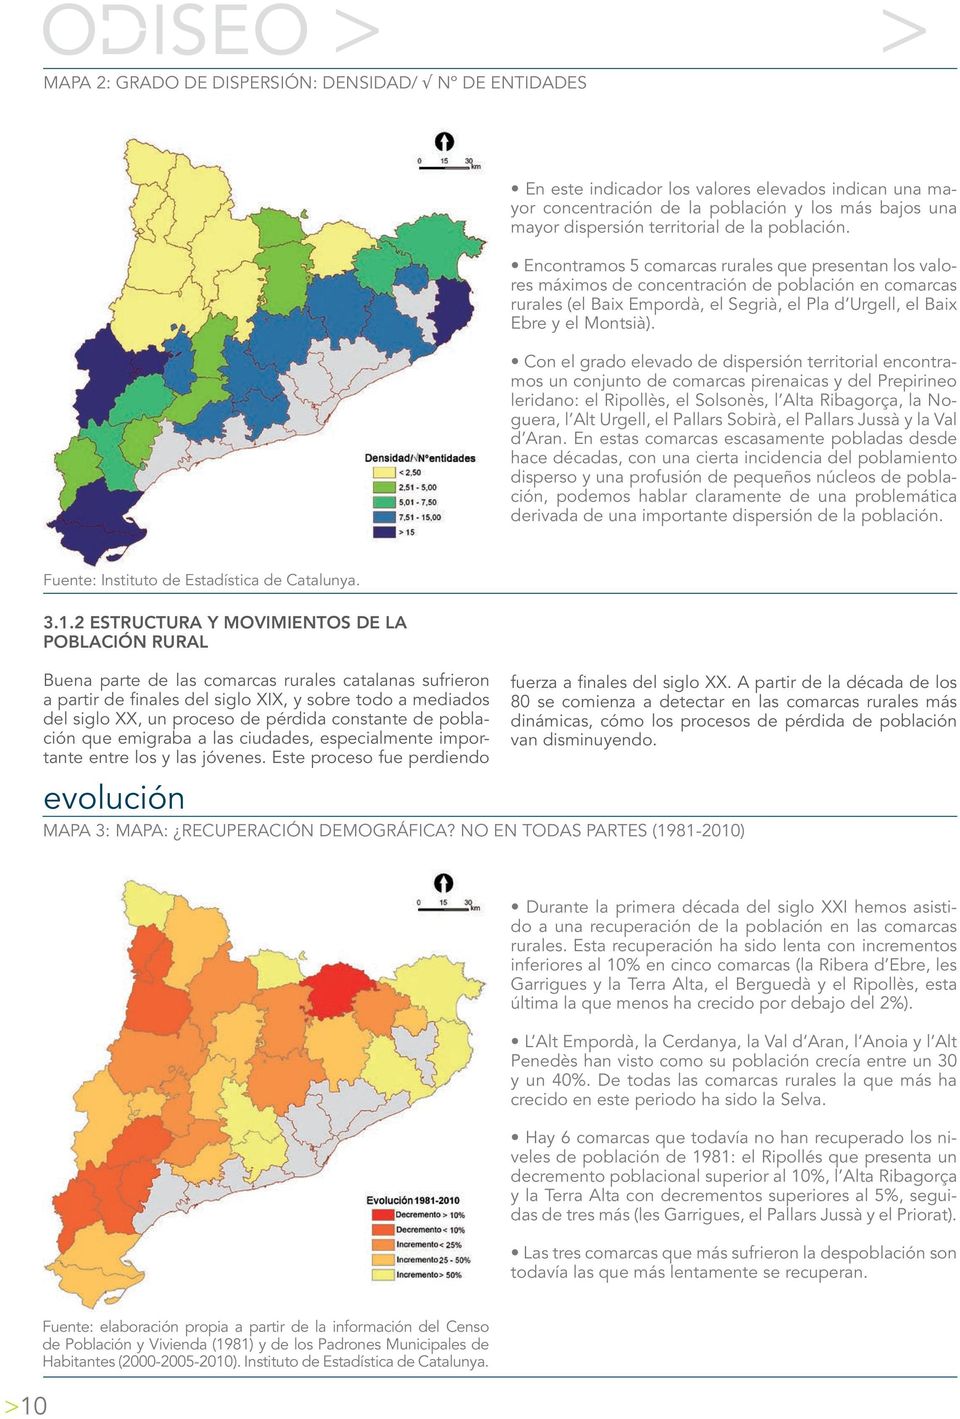 Encontramos 5 comarcas rurales que presentan los valores máximos de concentración de población en comarcas rurales (el Baix Empordà, el Segrià, el Pla d Urgell, el Baix Ebre y el Montsià).